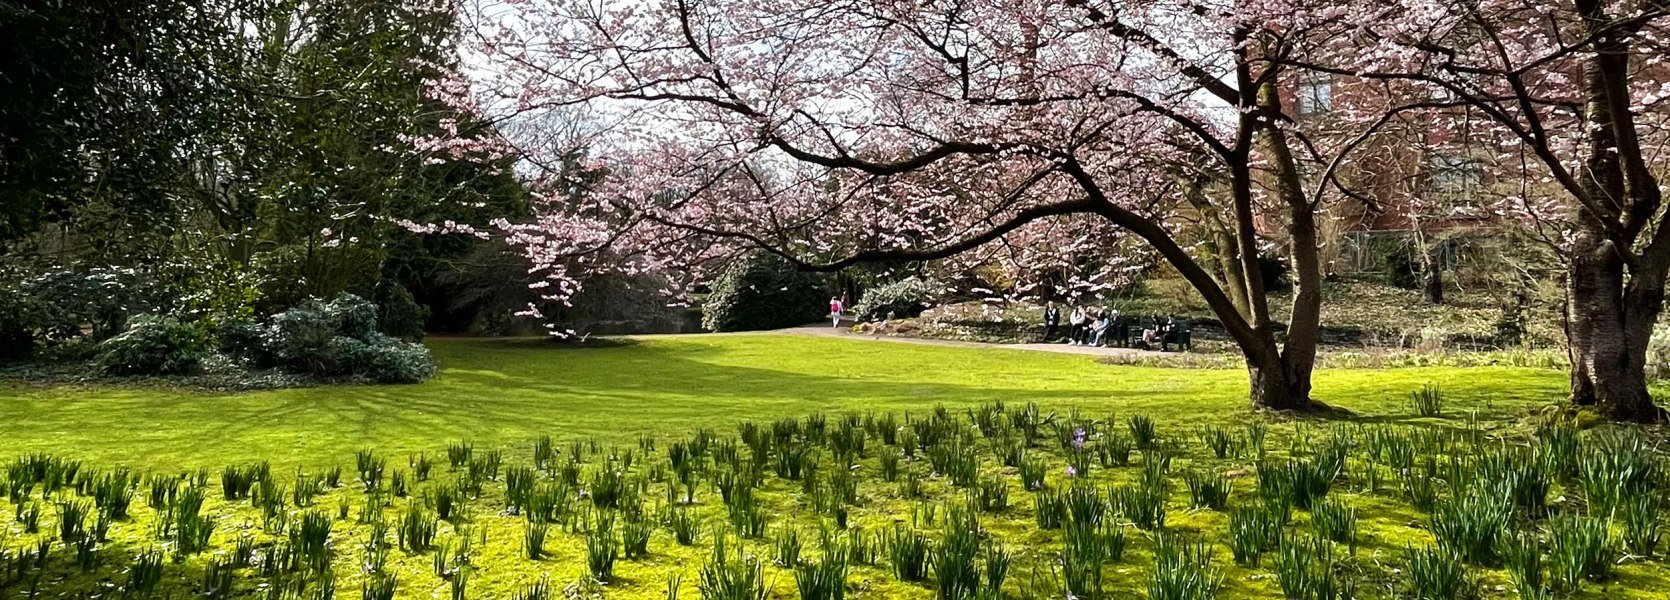 Oldenburger Schlossgarten im Frühling mit Frühblühern und blühenden Bäumen.